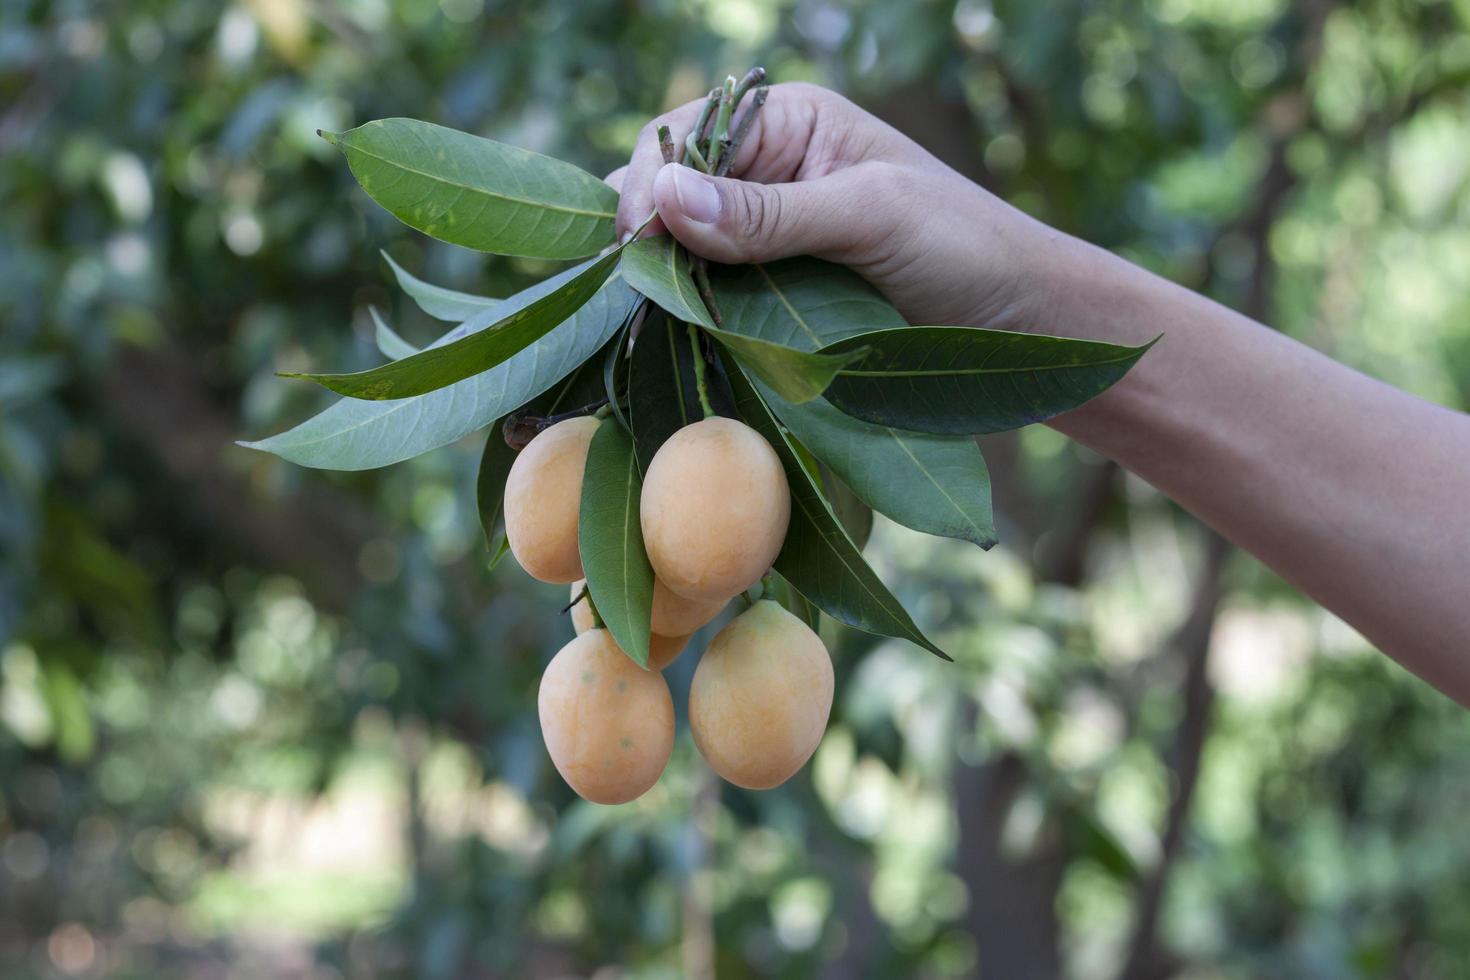 mano de agricultor sosteniendo un montón de ciruela mariana amarilla dulce o mango de ciruela en el jardín sobre un fondo natural borroso. foto